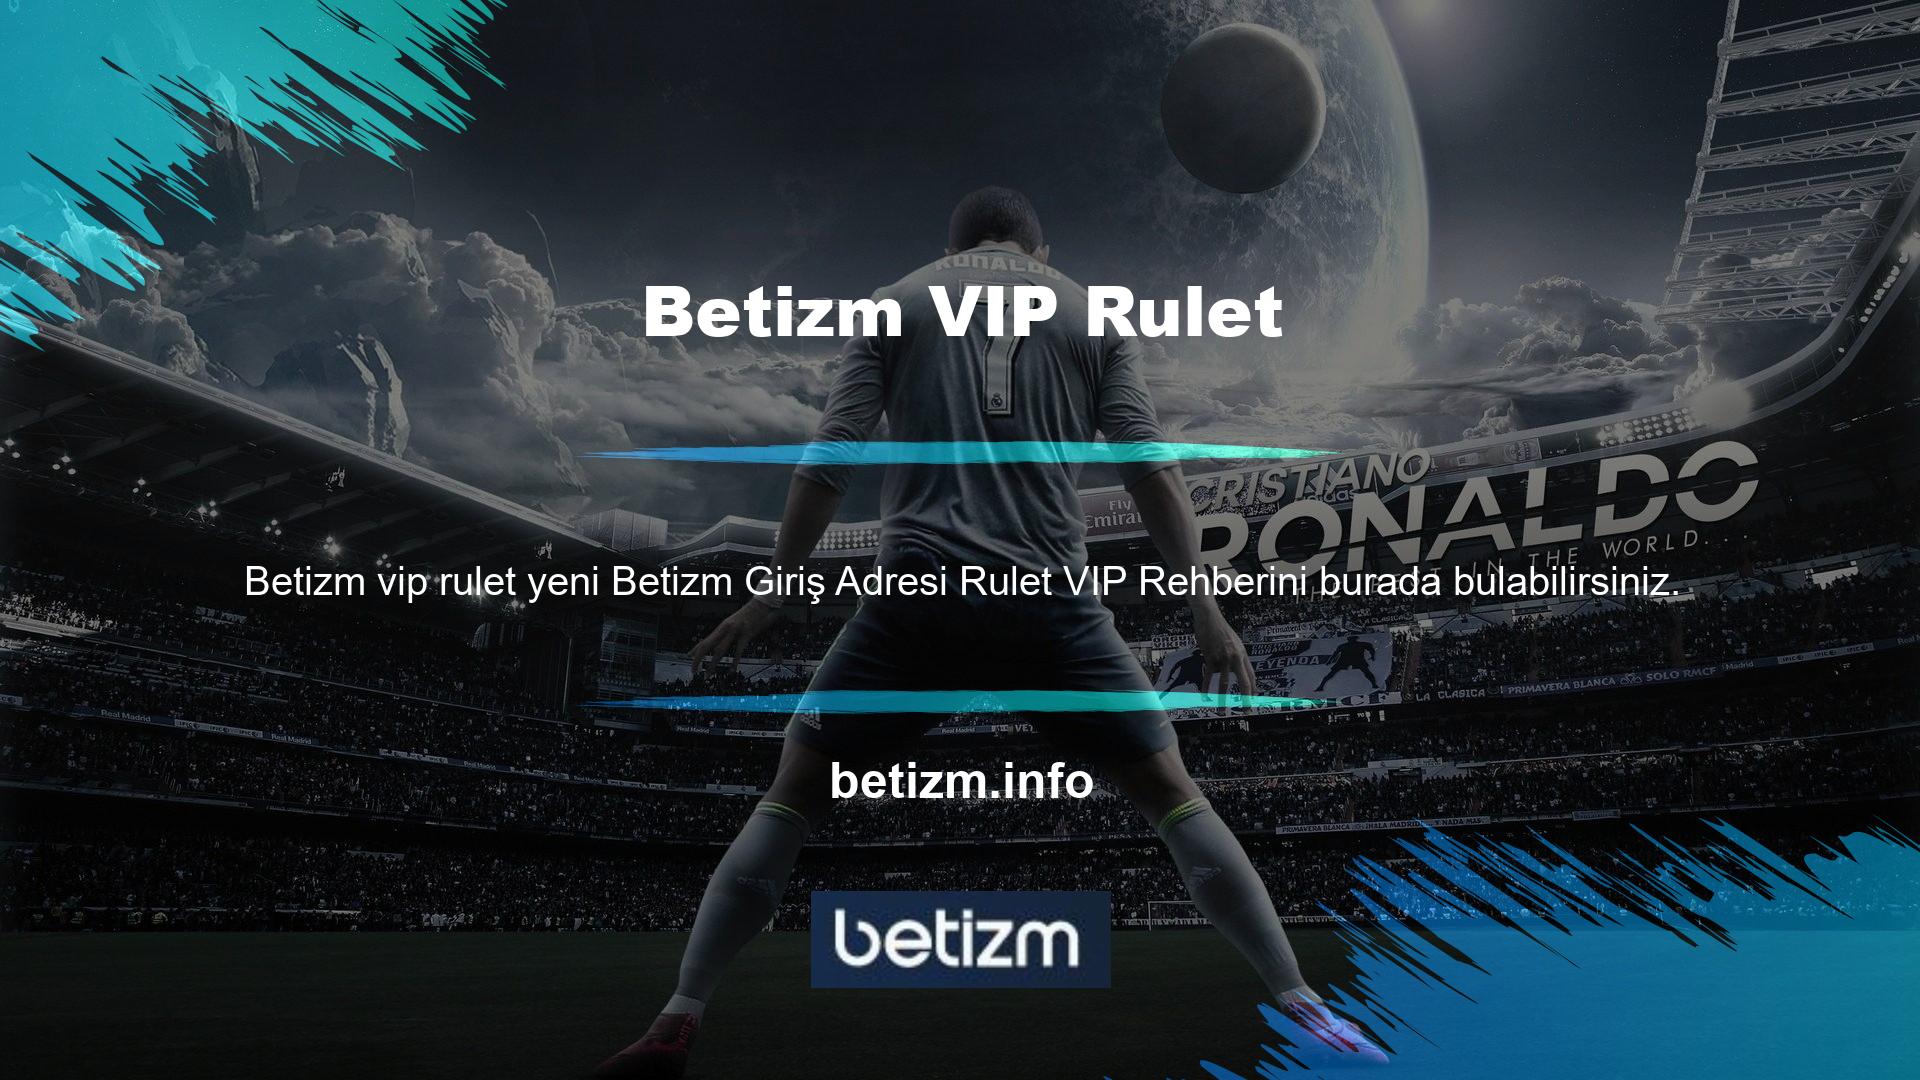 Bahis sitelerinde popüler bir casino oyunu kategorisi olan Betizm VIP Ruleti